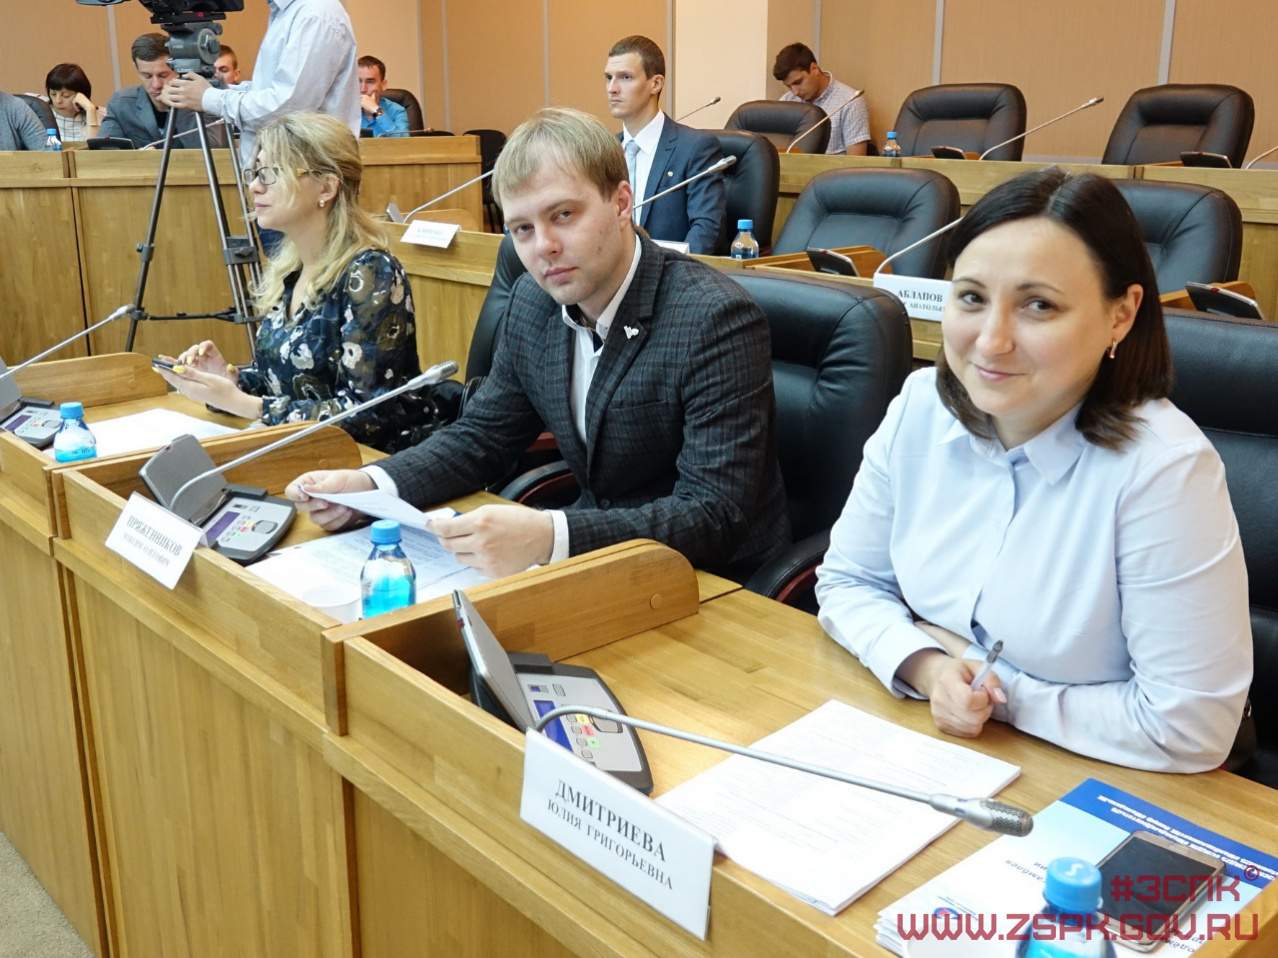 Студентов ВВГУ приглашают в Молодежный парламент Приморья